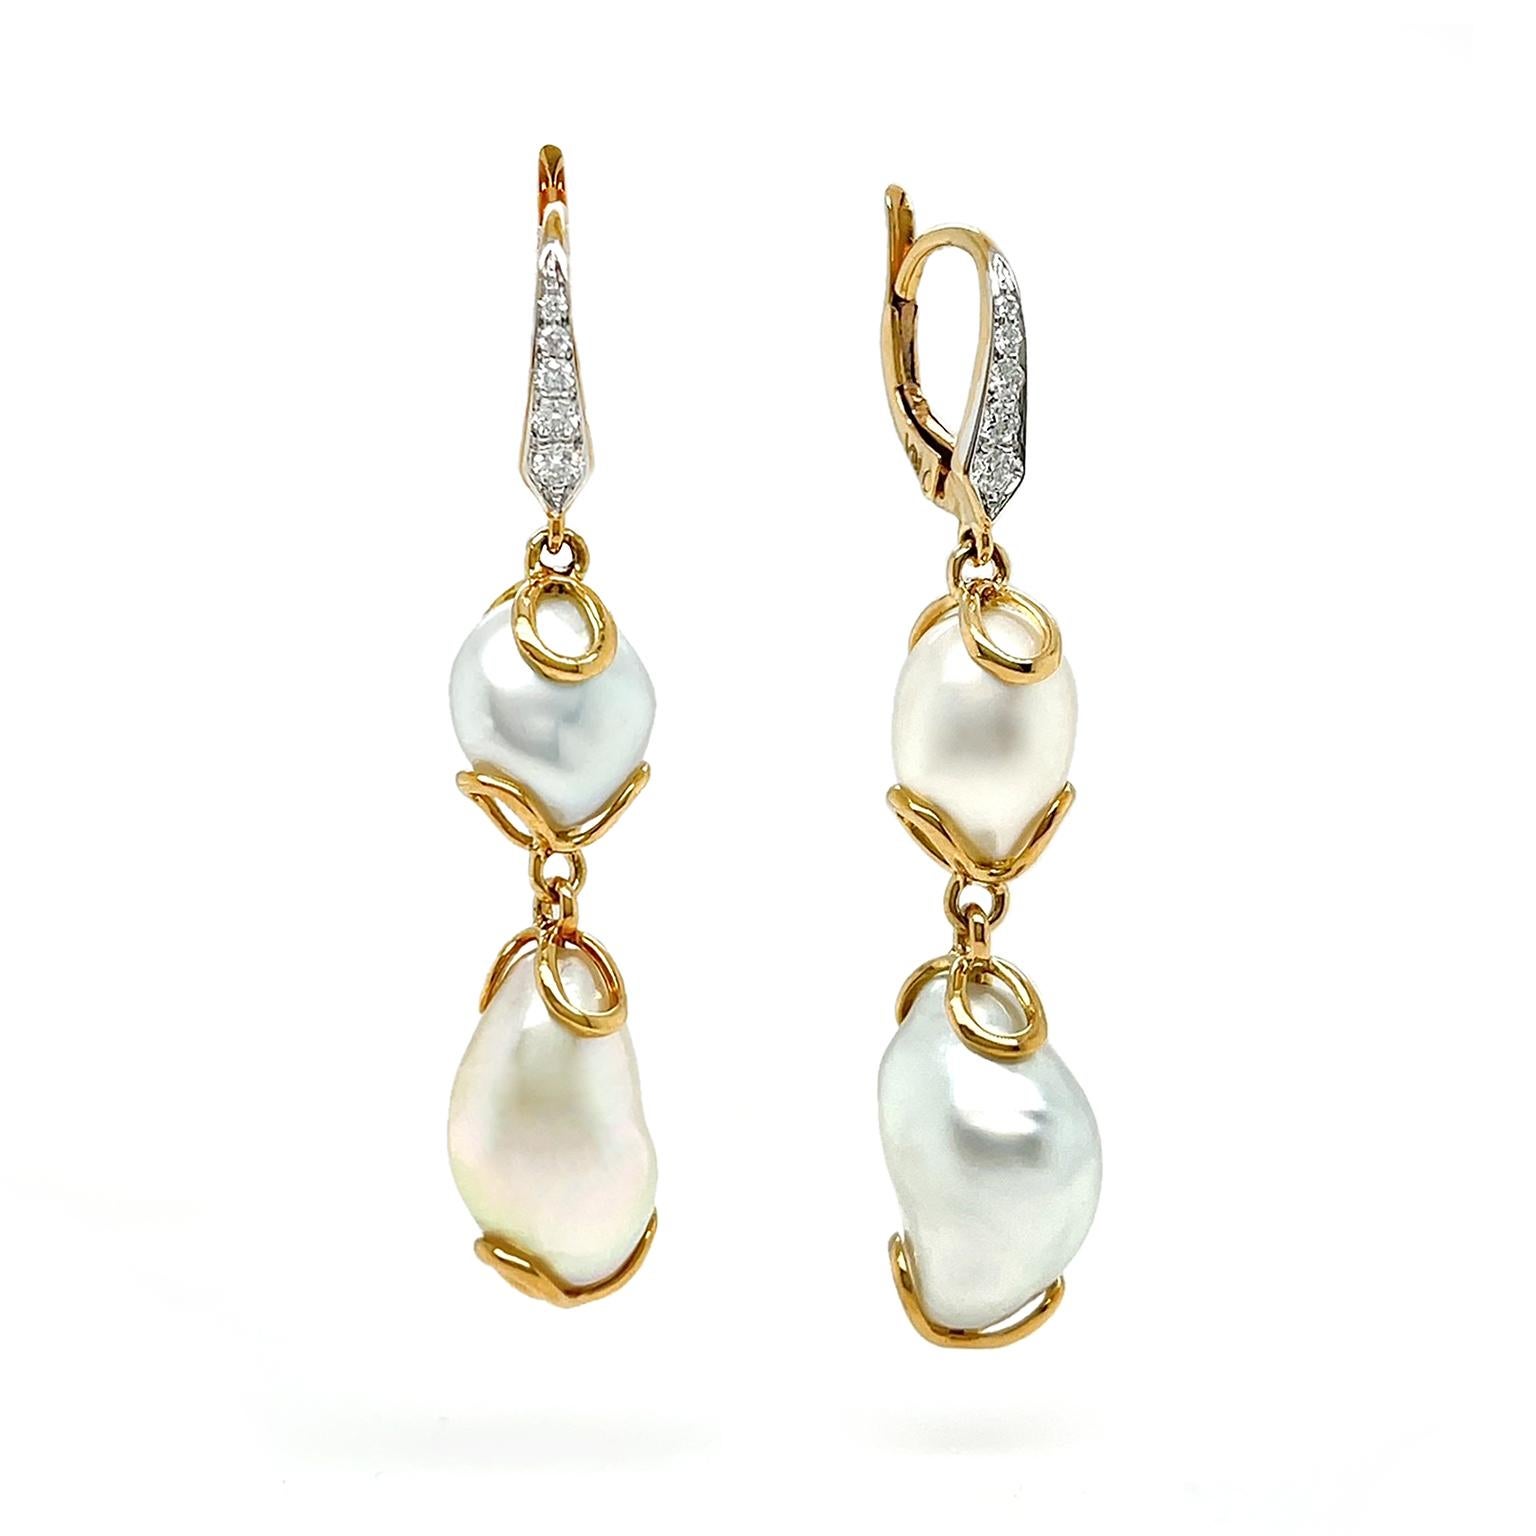 Die verschiedenen Schattierungen der weißen Keshi-Perlen verleihen diesen Ohrringen ihre Eleganz. Mit Diamanten besetzte 18-karätige Gelbgold-Hebel sind mit goldenen Schlaufen verbunden, die eine kleinere ovale Perle sichern, während eine weitere